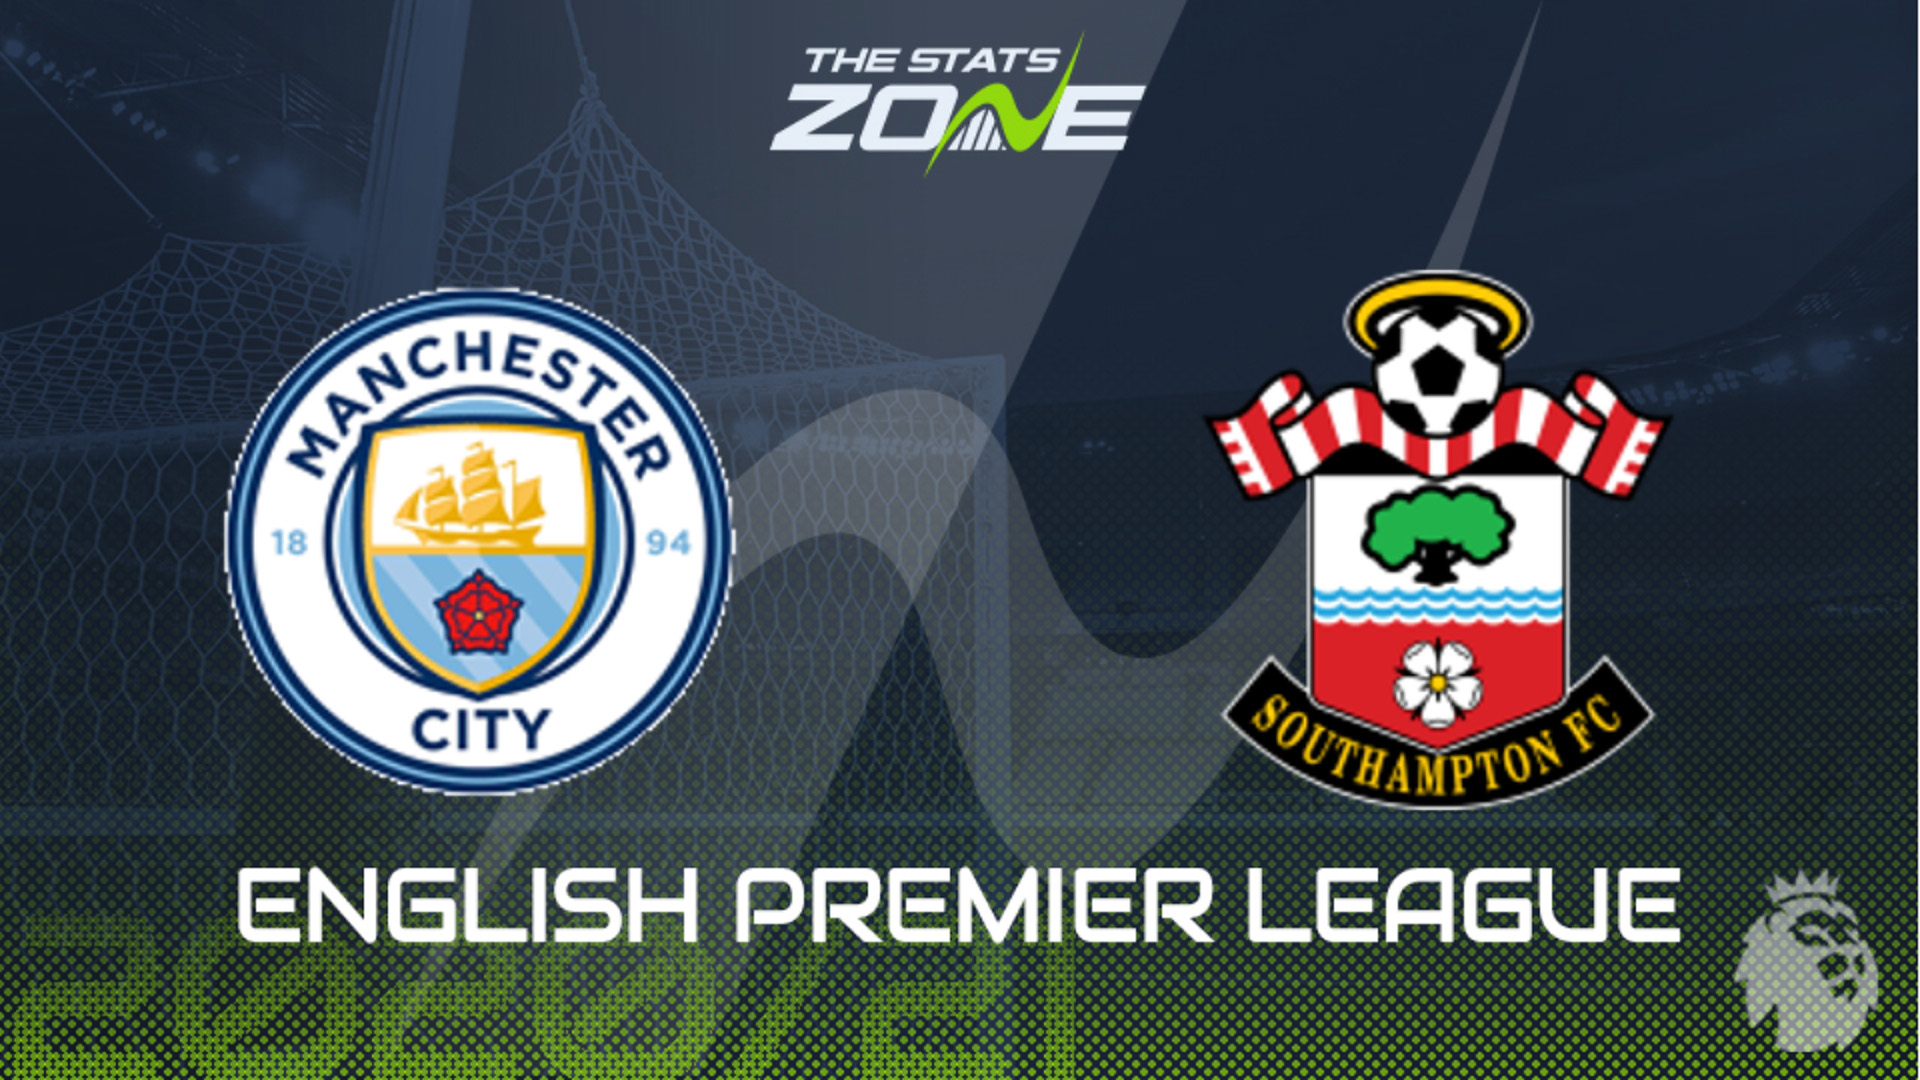 English Premier League HD Man City vs Southampton